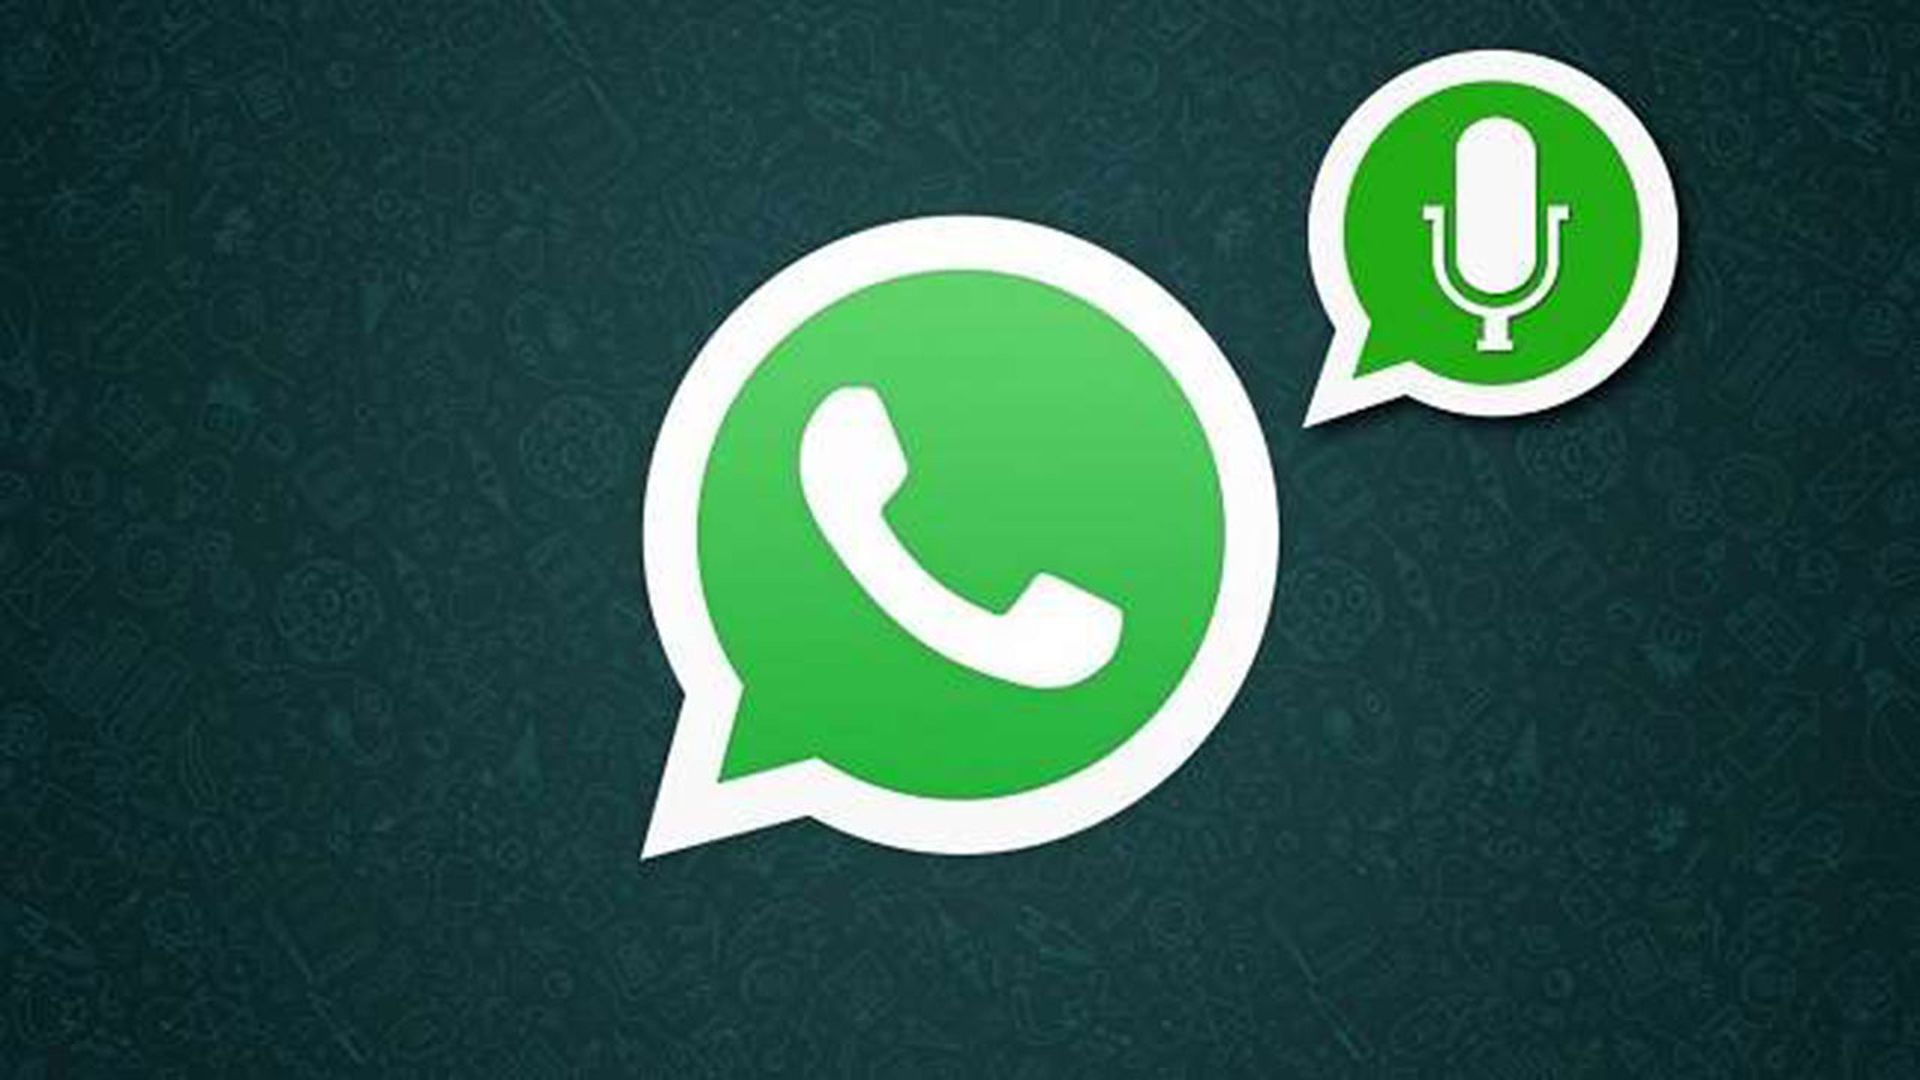 La Nueva Función De Whatsapp Que Te Hará La Vida Mucho Más Fácil 0135